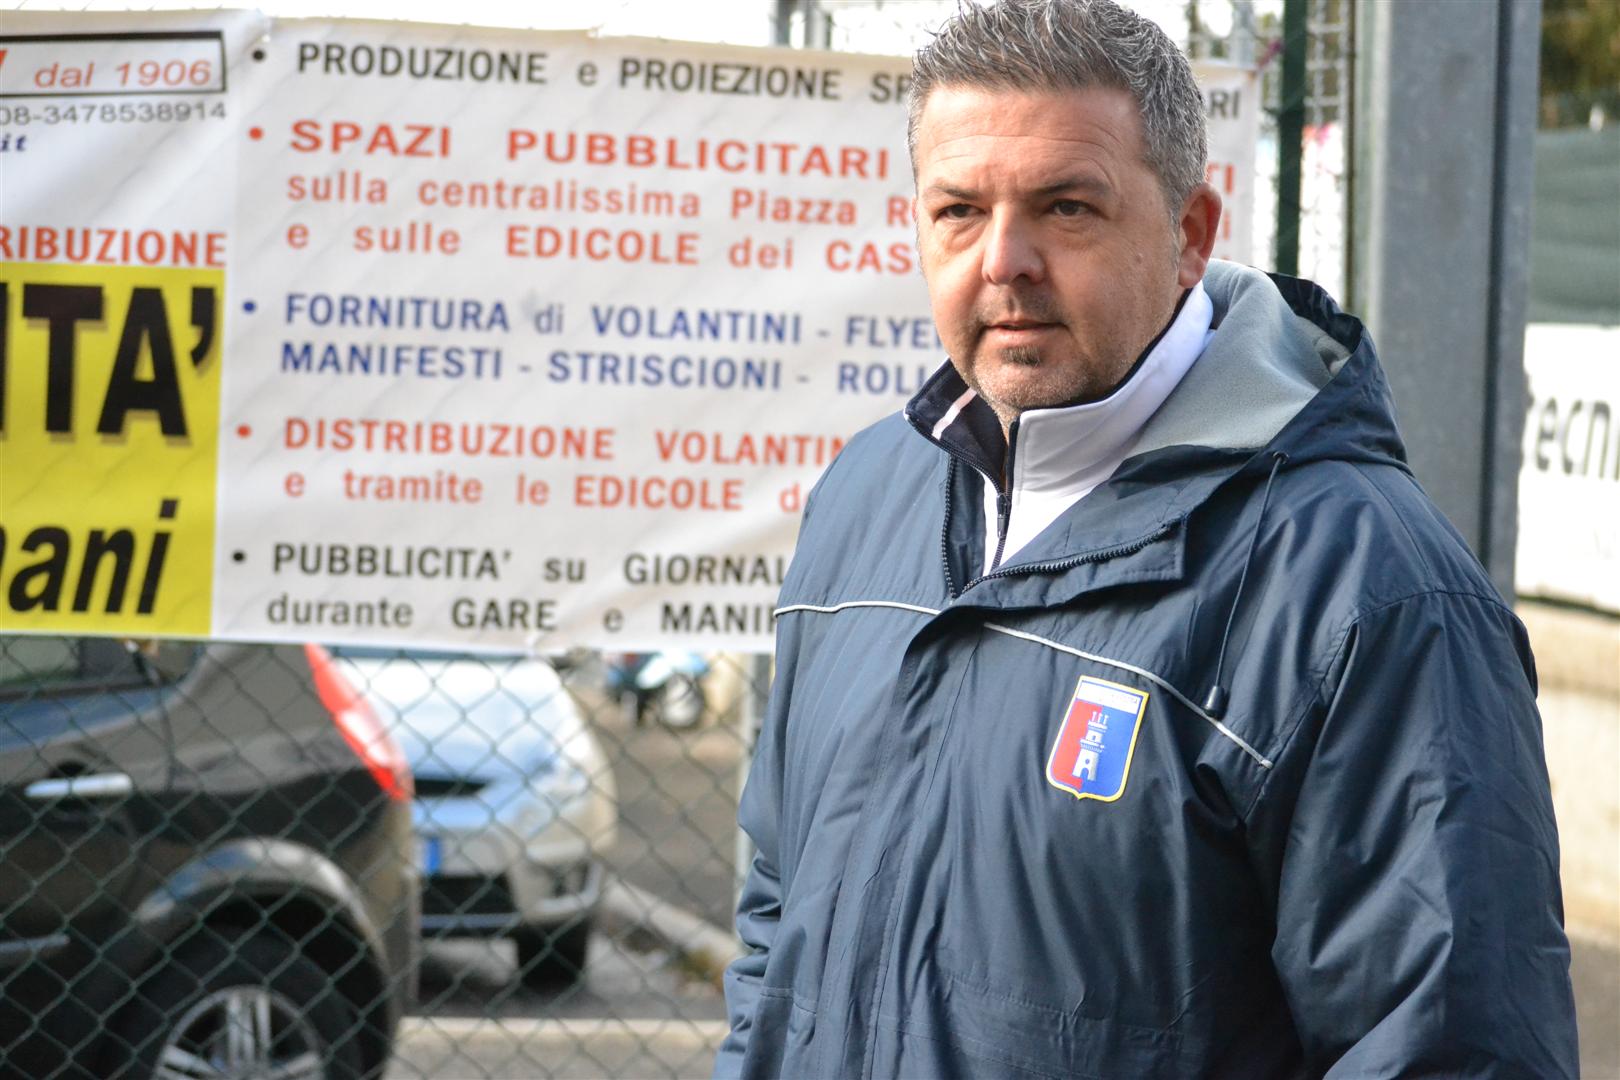 Rocca Priora calcio, Rocchi rientra da presidente: "Ci metto la faccia"